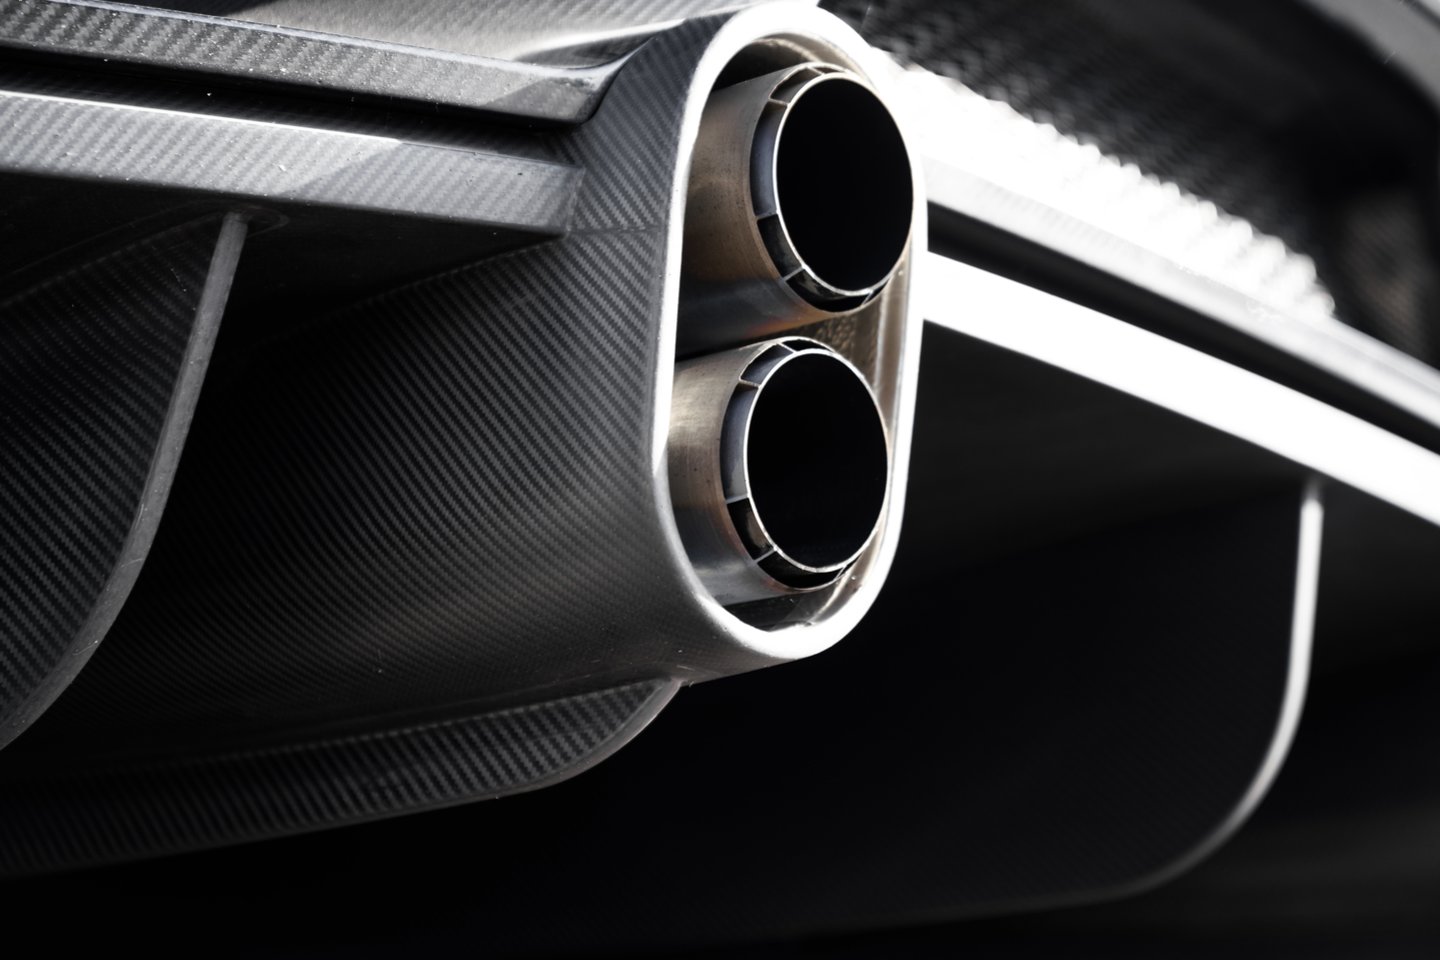 Siekiant pažymėti ypatingą greičio rekordą bus išleista speciali galingesnė „Bugatti Chiron“ versija. <br> Gamintojo nuotr.